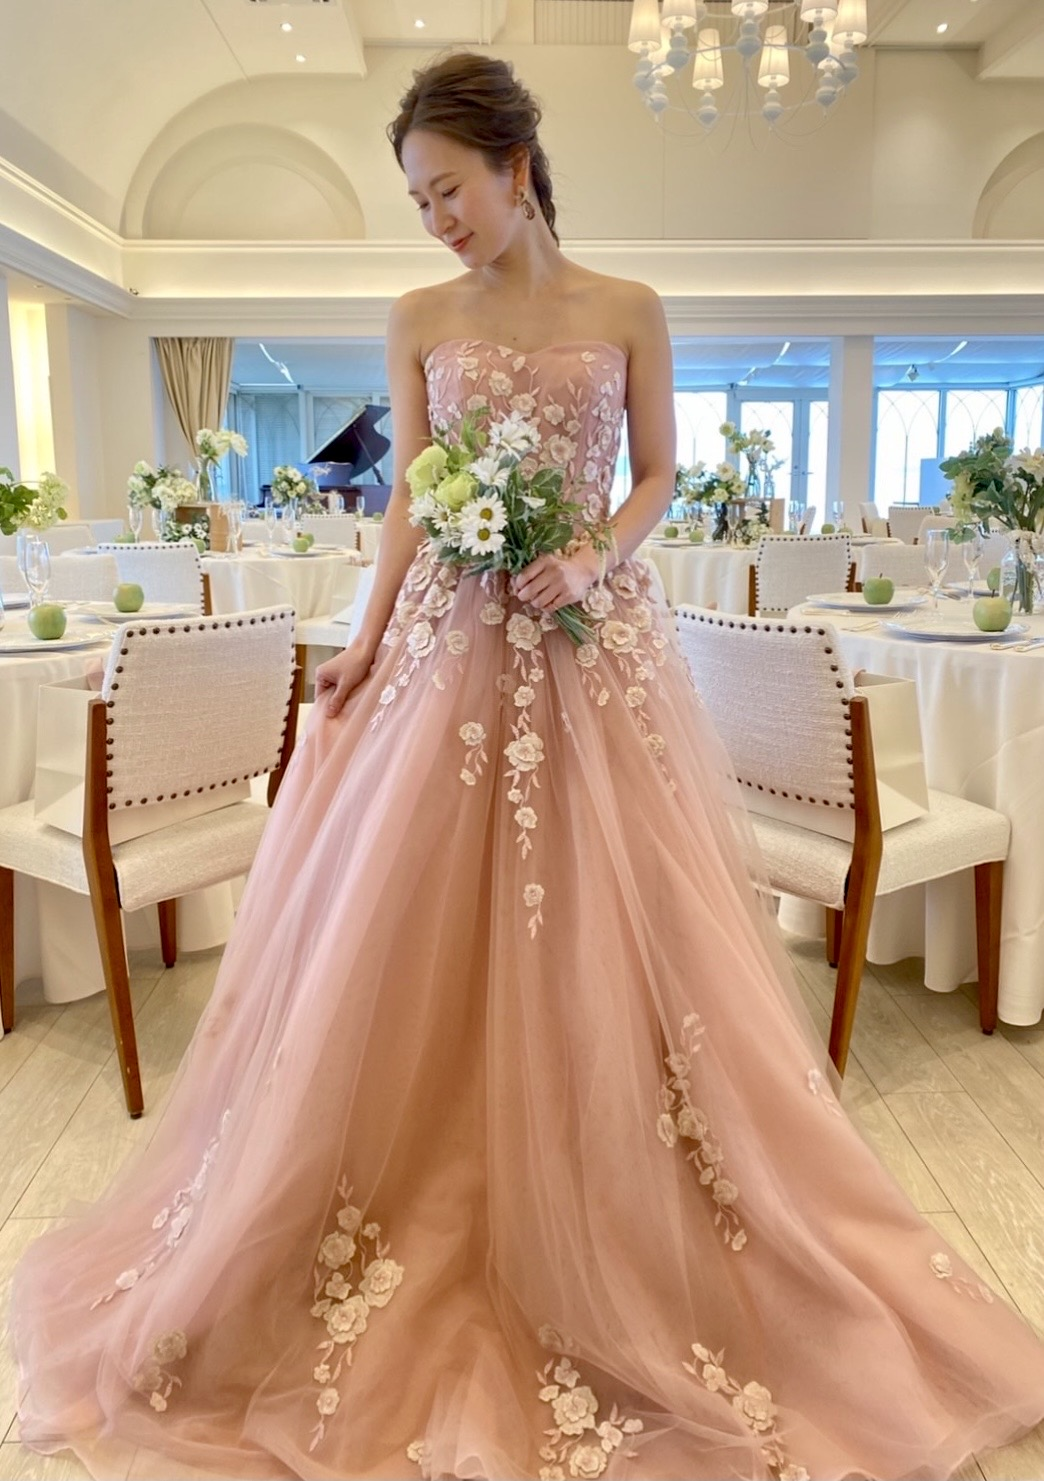 カラードレス 薄桃色 3D立体レース刺繍 プリンセスライン ロングトレーン 披露宴/結婚式